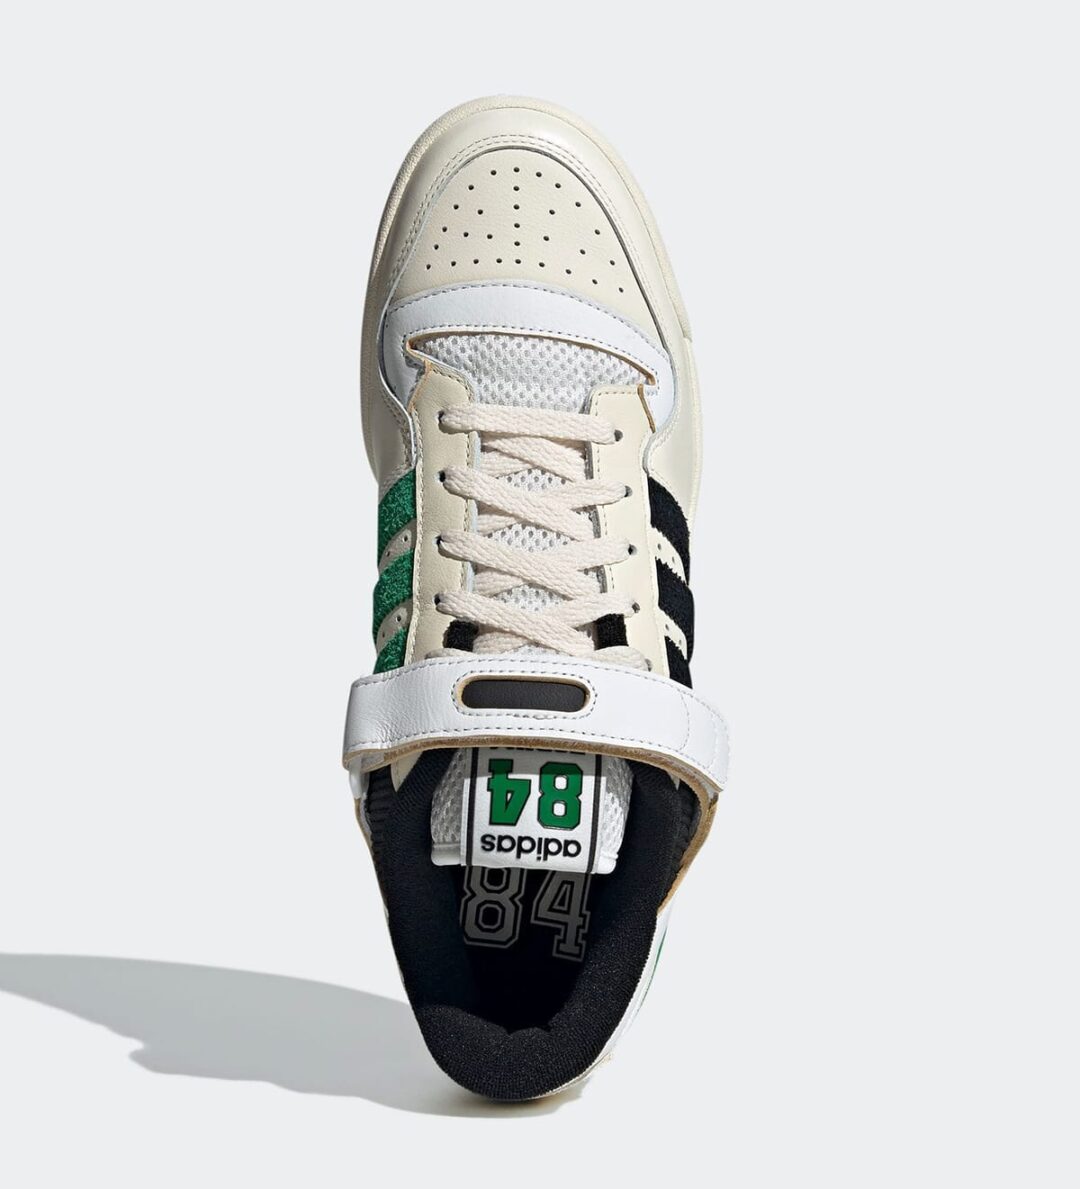 【10/26 発売予定】adidas Originals FORUM LOW 84 “Champions Pack/Celtics” (アディダス オリジナルス フォーラム ロー 84 “チャンピオンズパック/セルティックス”) [GX9058]